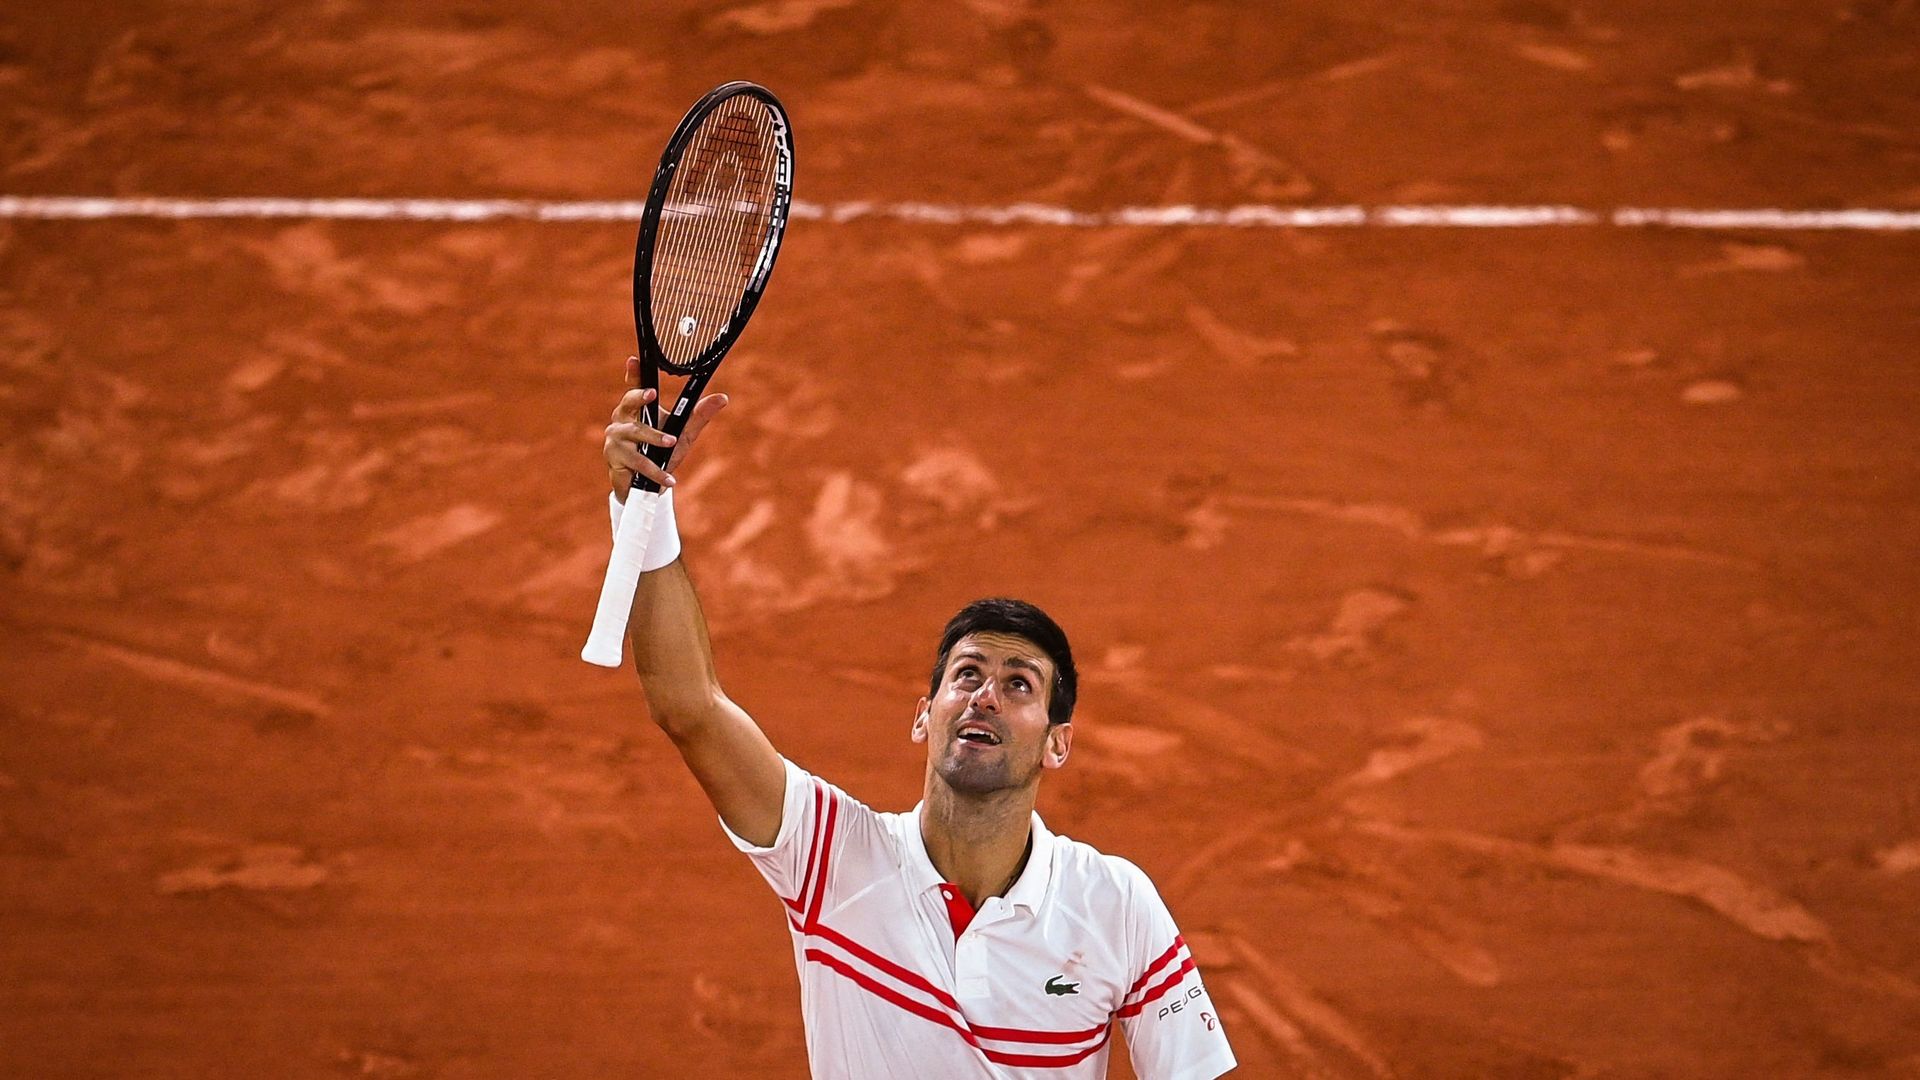 Novak Djokovic a offert sa raquette à une jeune fan à l’issue de la rencontre